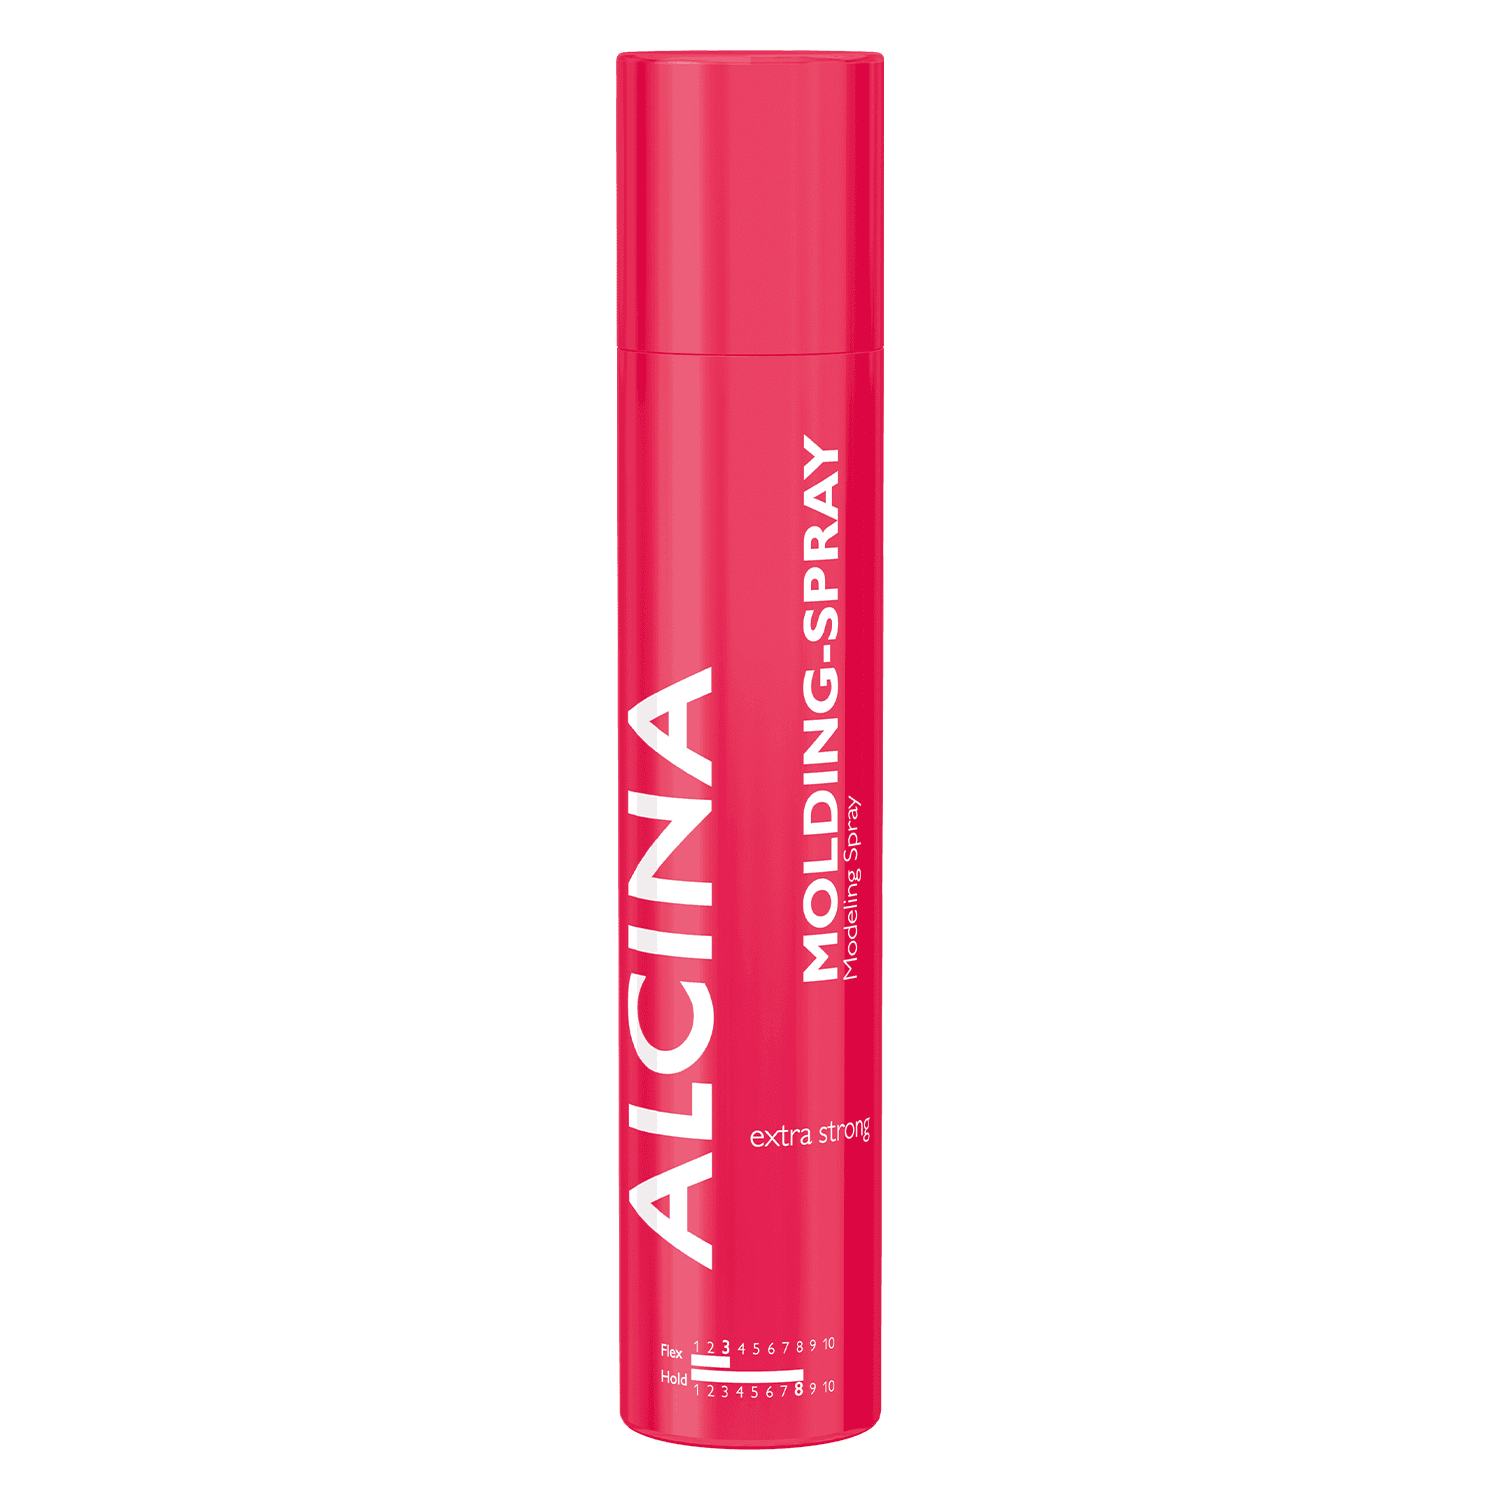 Alcina Extra Strong - Molding Spray